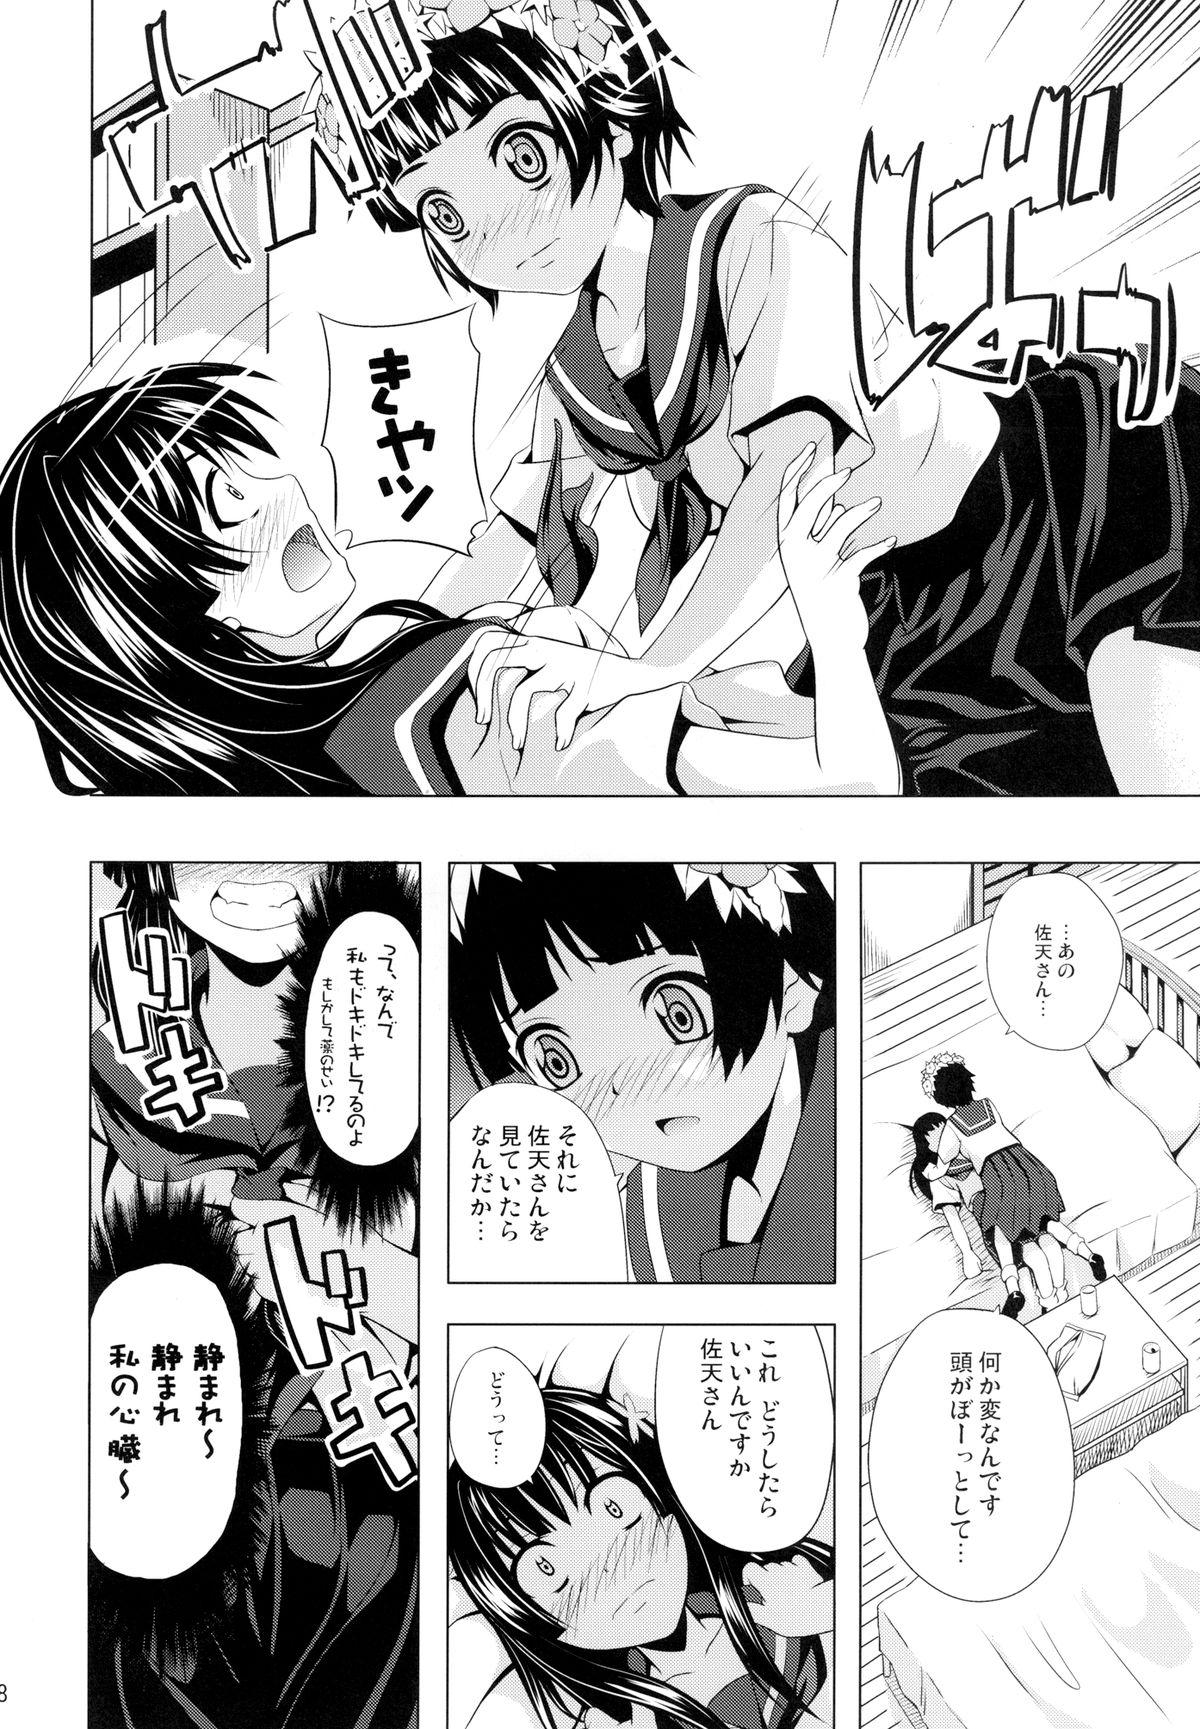 Latin Uiharu no U Saten no Sa - Toaru kagaku no railgun Gay Kissing - Page 8